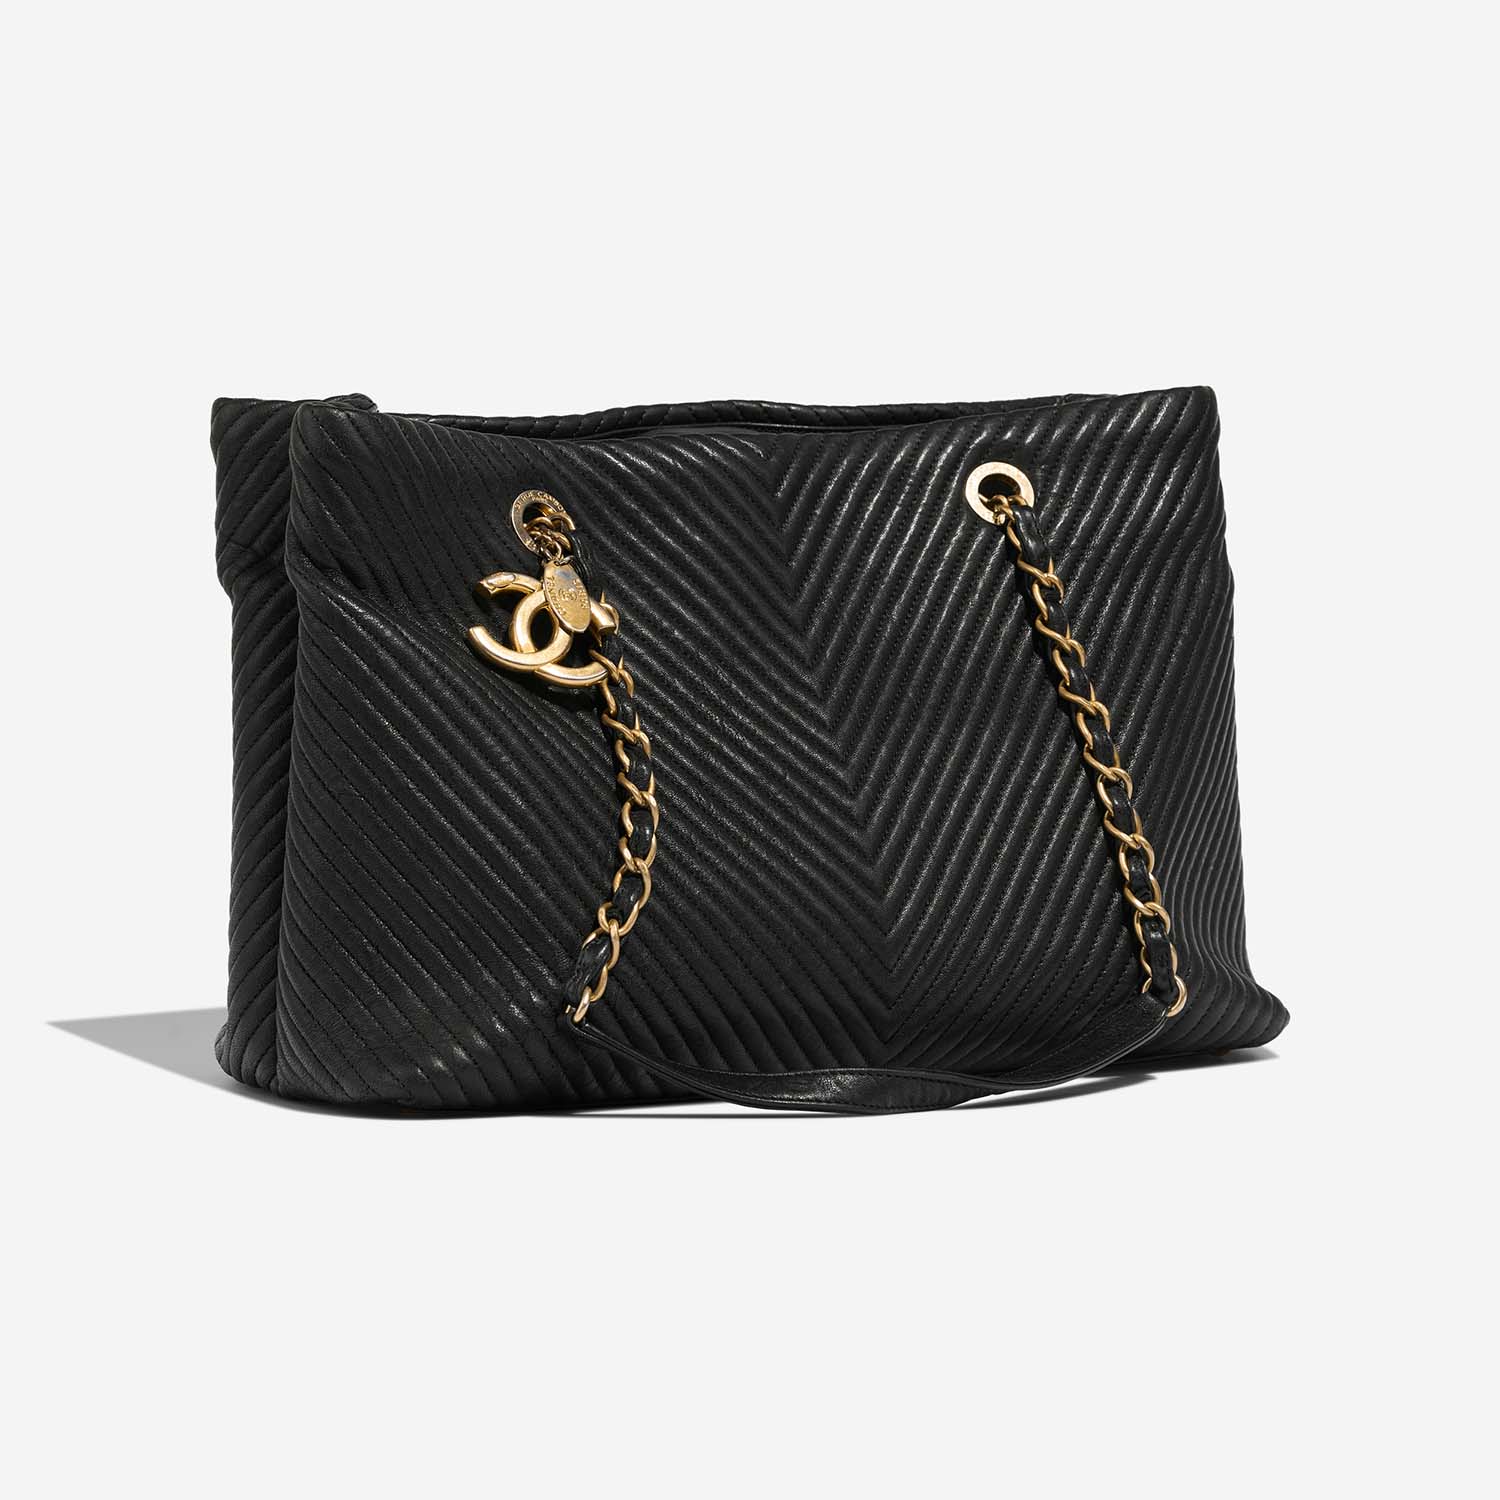 Chanel GST Large Black Side Front | Verkaufen Sie Ihre Designer-Tasche auf Saclab.com